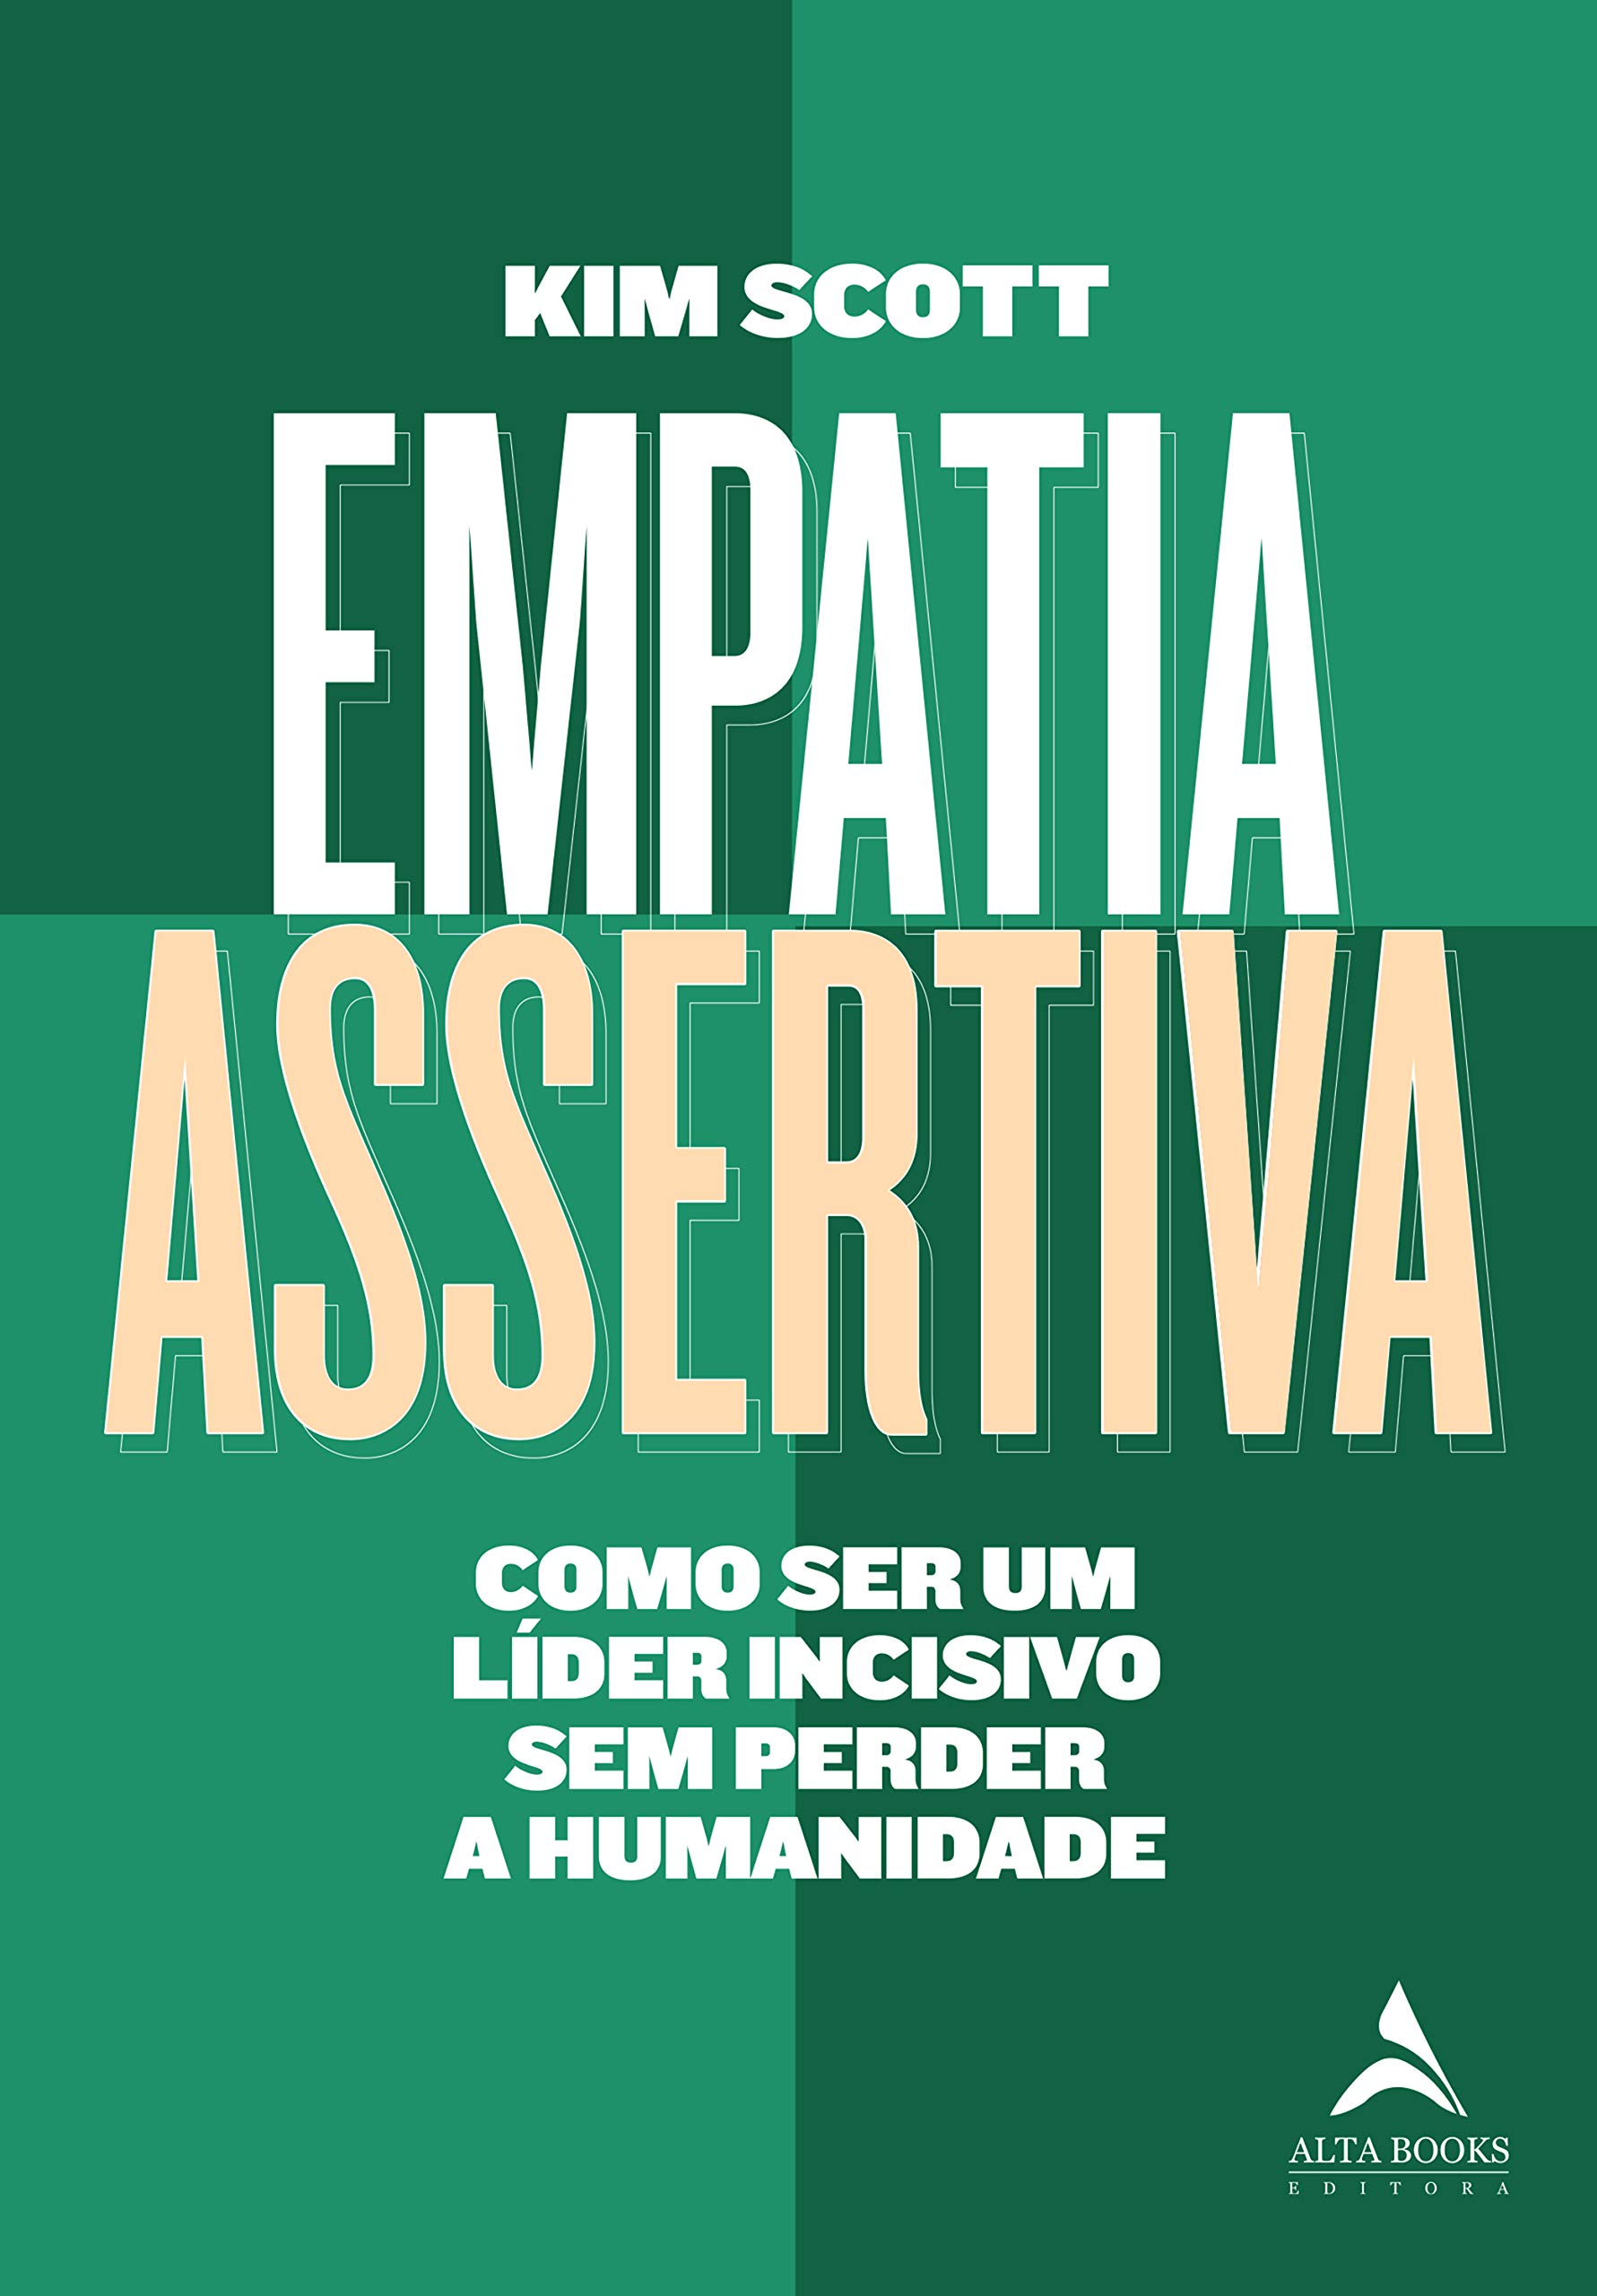 Livro 'Empatia Assertiva: Como ser um líder incisivo sem perder a humanidade' por Kim Scott